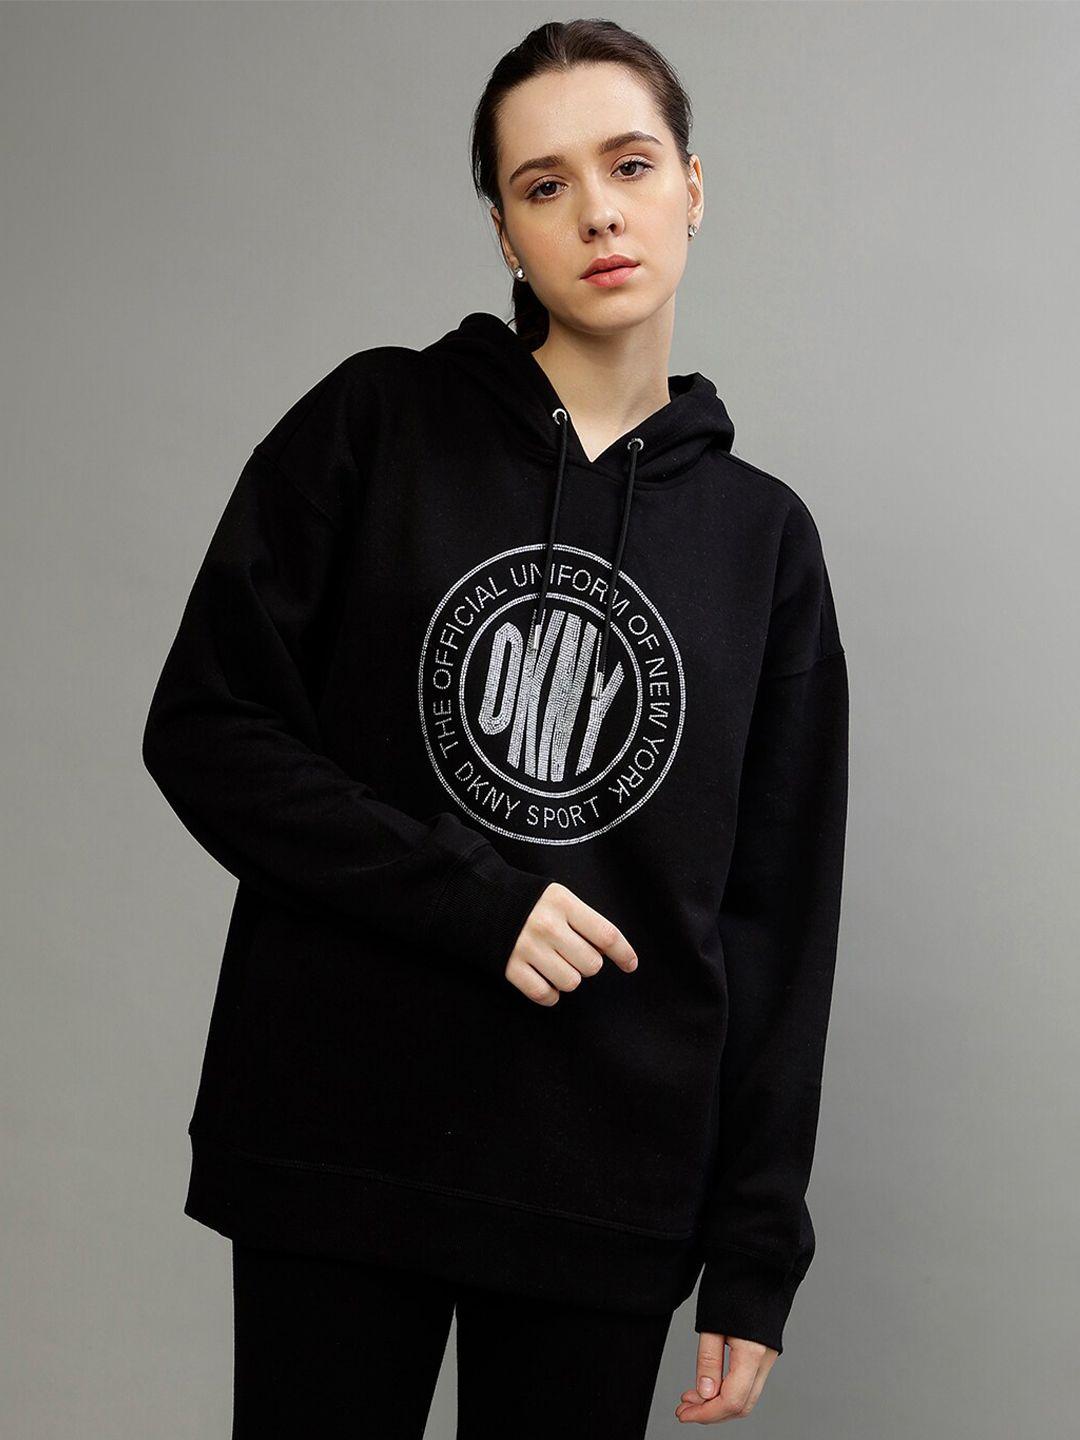 dkny printed typography printed hood pullover sweatshirt